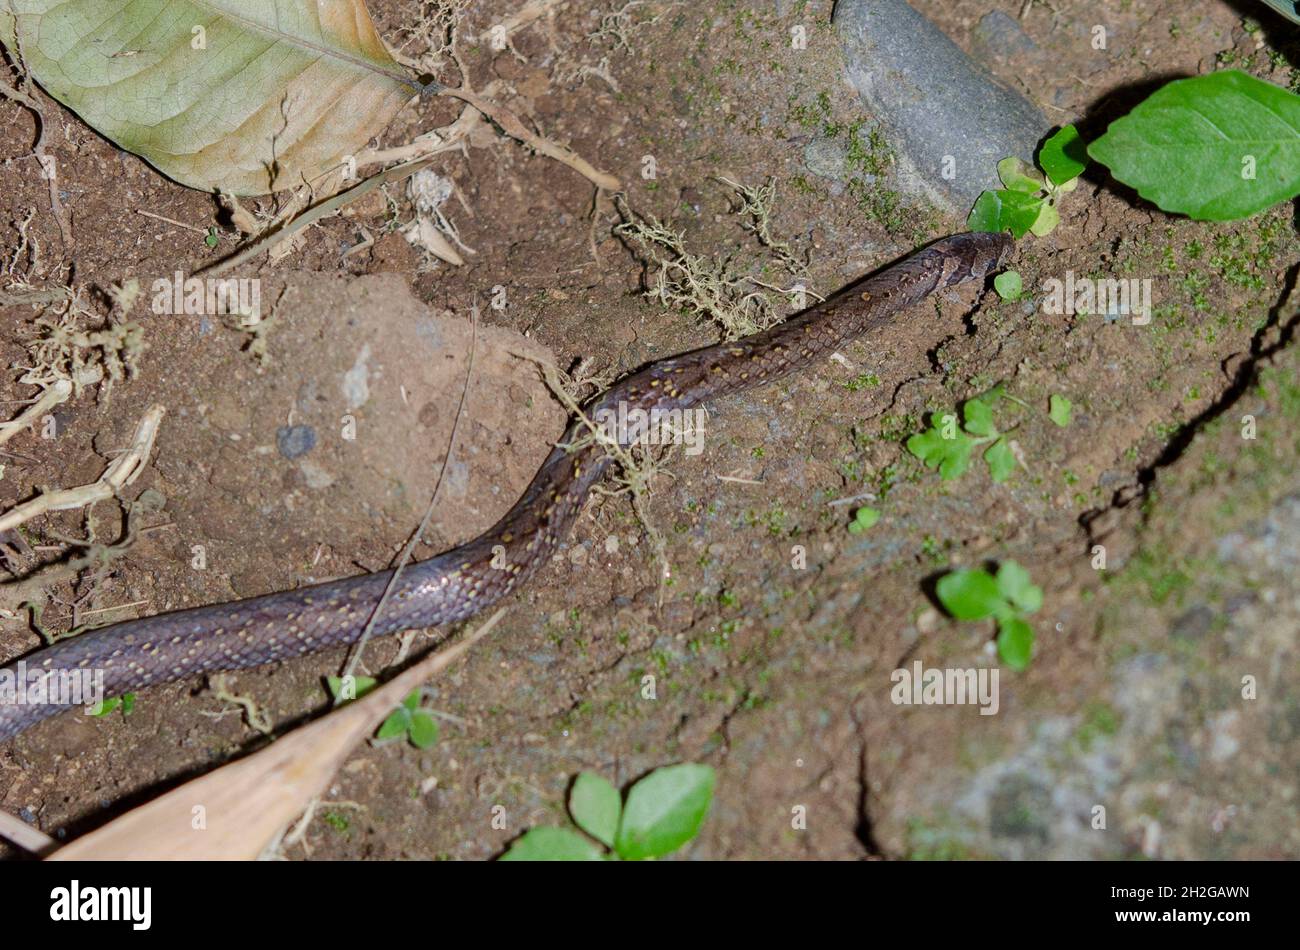 Boie's Kukri Snake, Oligodon bitorquatus, zeigt alte Haut, die am unteren Teil noch nicht durchschlackt ist, nicht giftig, endemisch in Indonesien, Saba, Gianyar, Bali Stockfoto